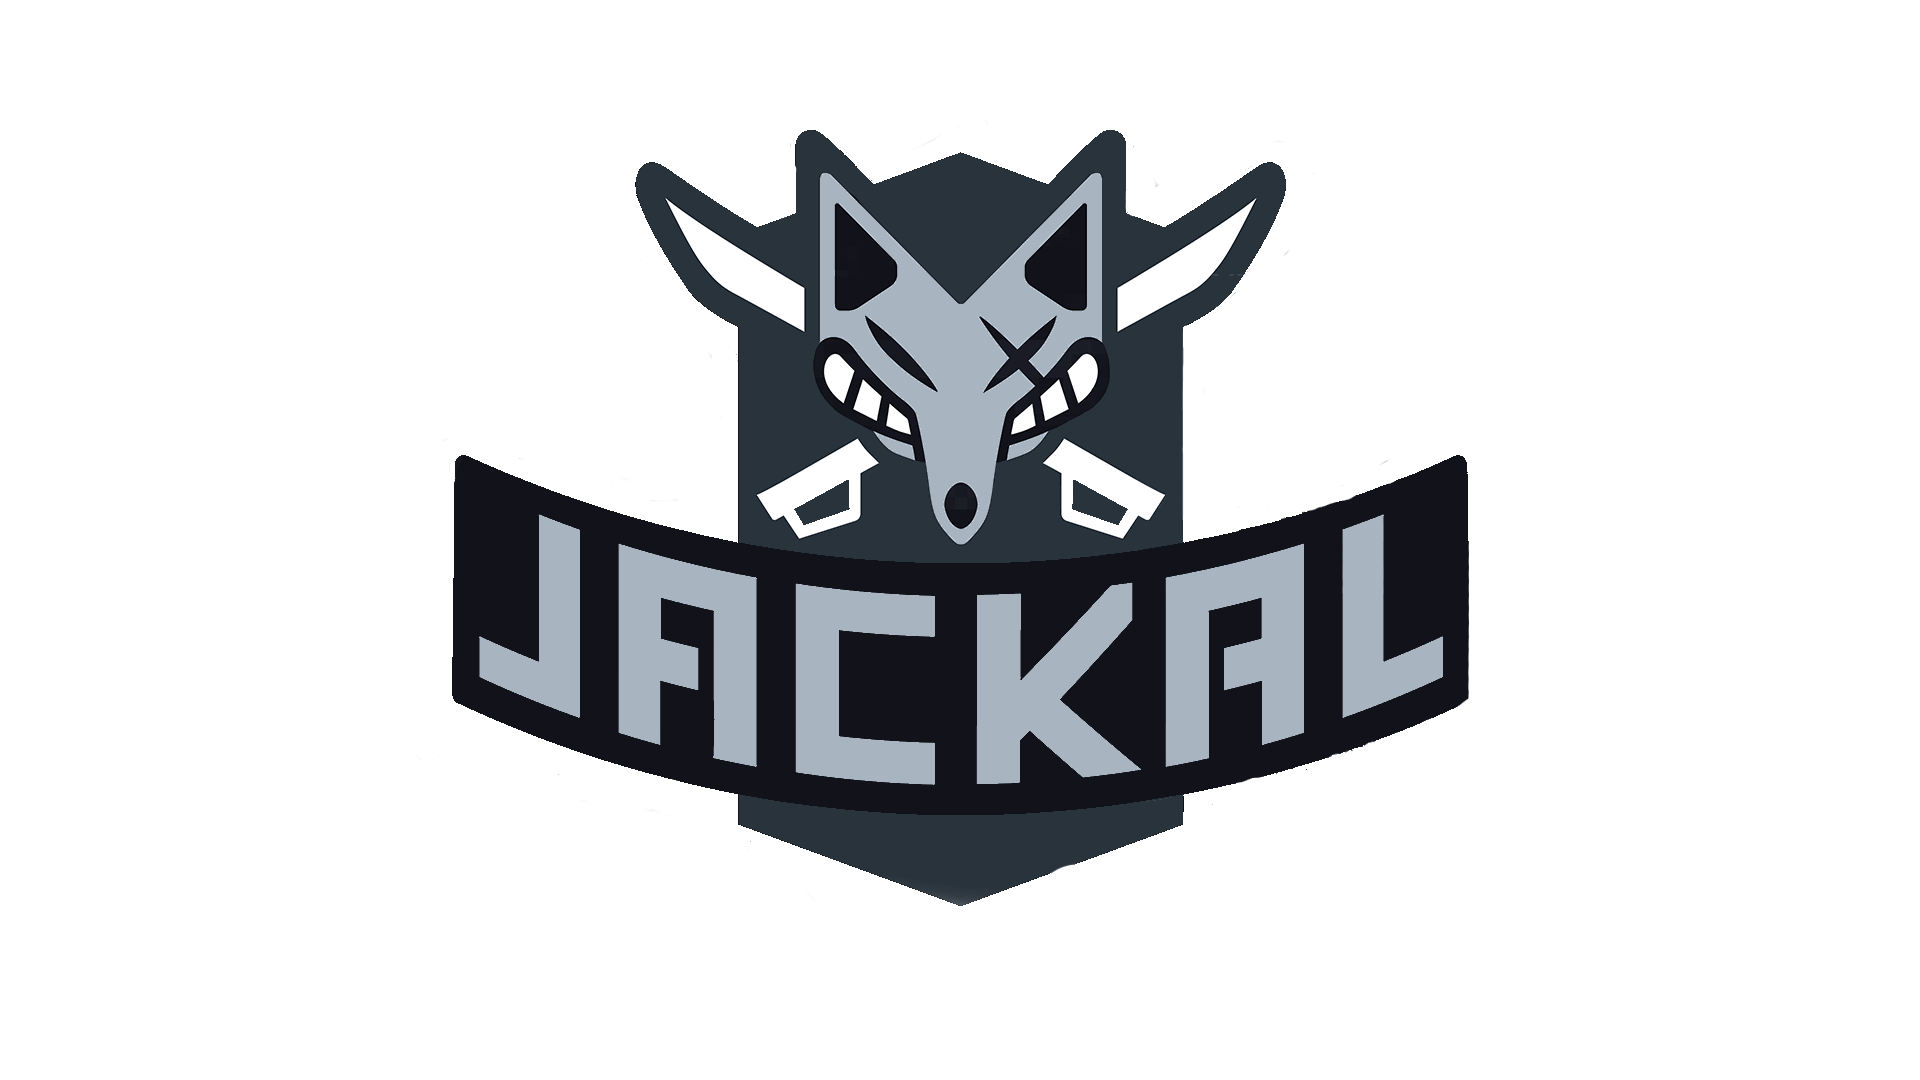 Jackal Logo - Transparent Background Jackal Logo, needed it for a wallpaper ...